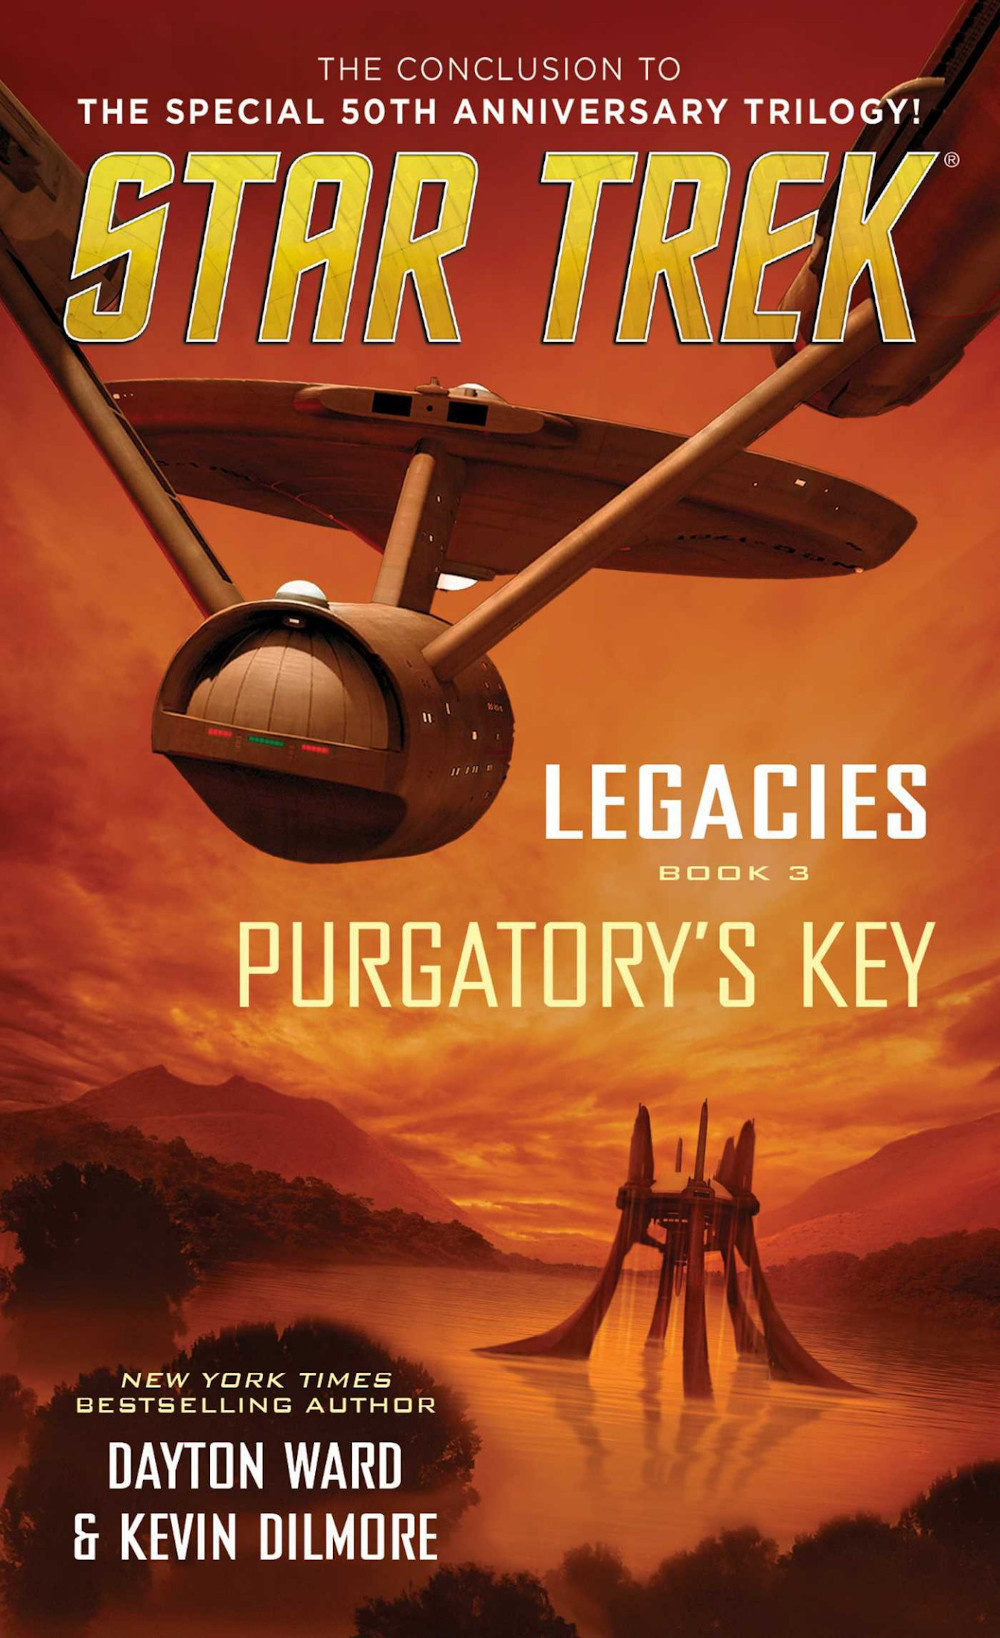 Legacies, Book 3: Purgatory's Key (Aug 2016)